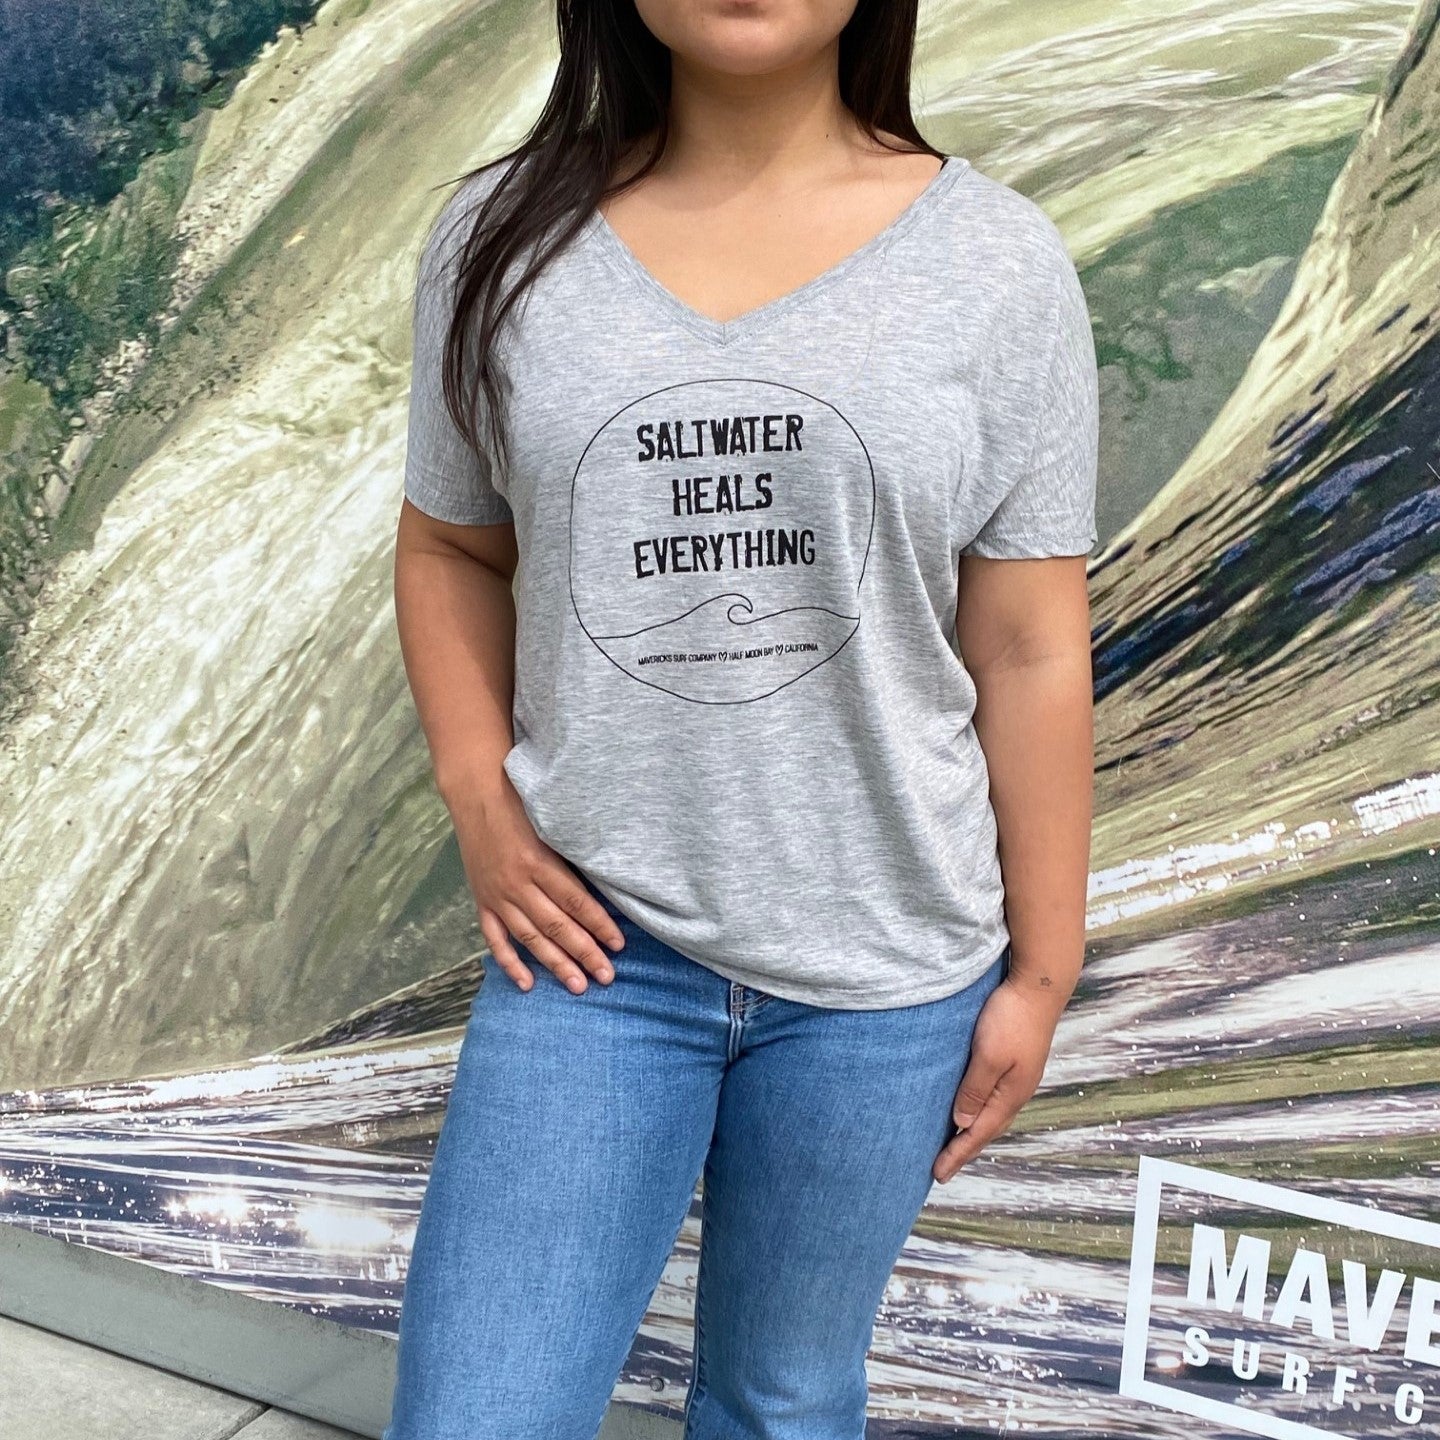 mavericks women's shirt